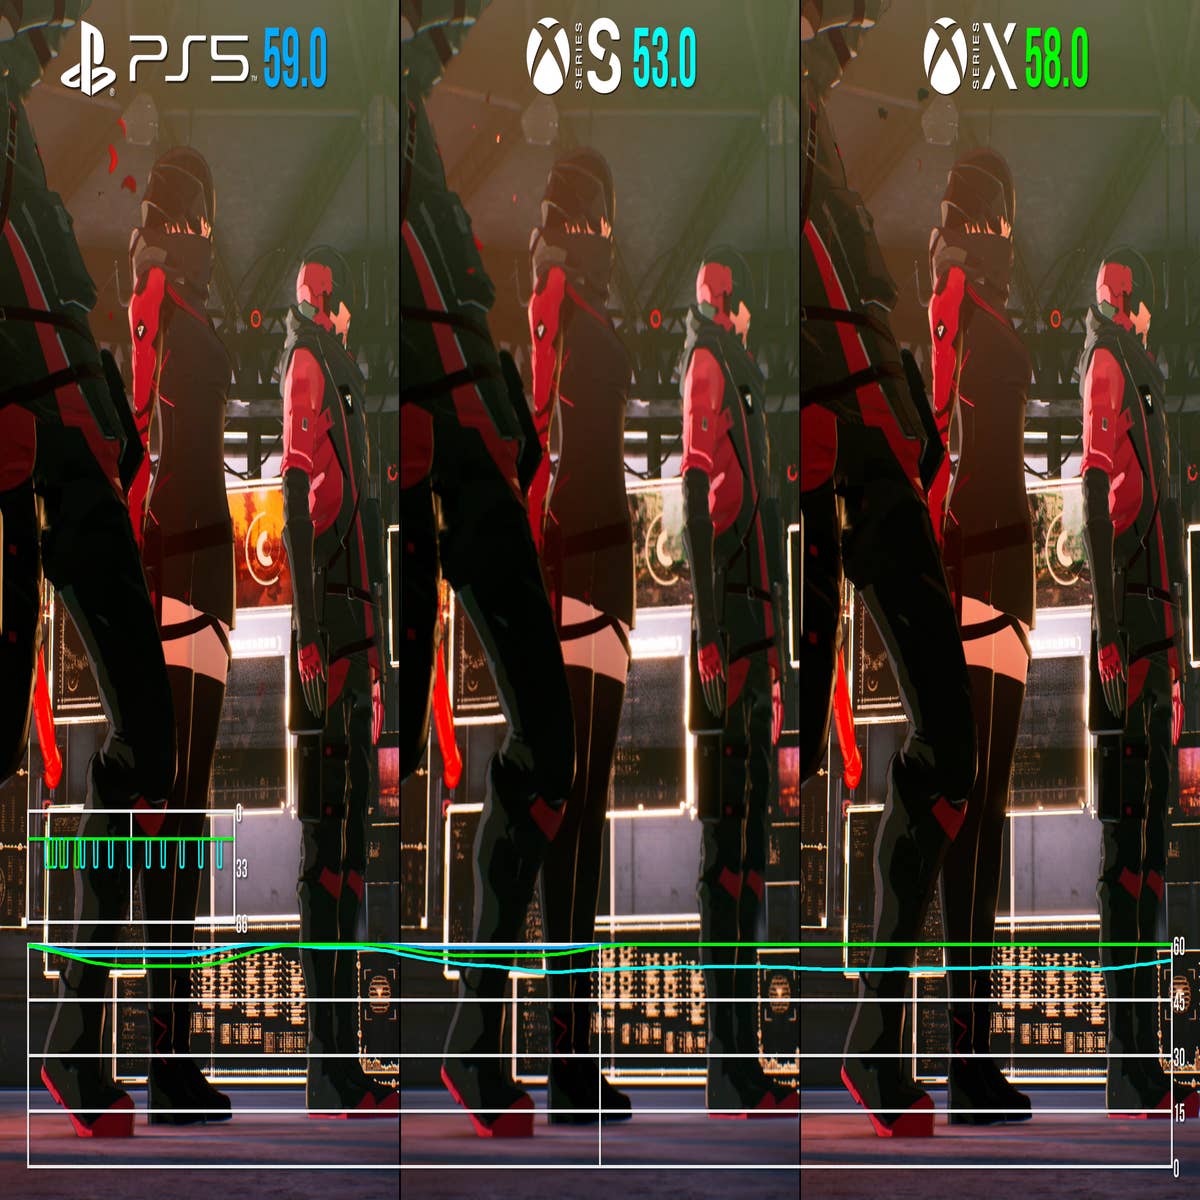 Scarlet Nexus - PS5 Gameplay 4K HDR 60FPS (Playstation 5 Demo) 